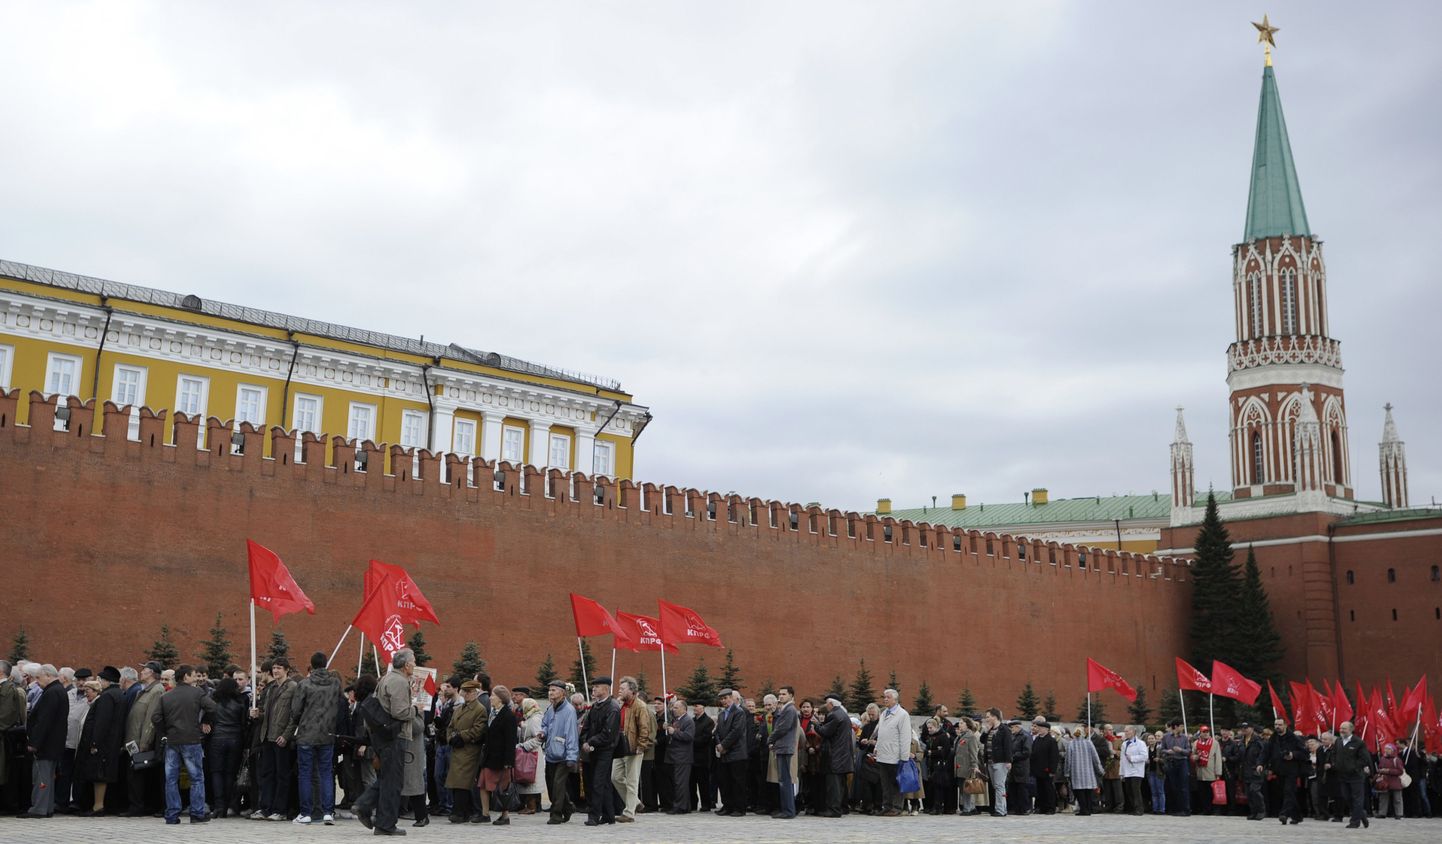 Kommunistide poolehoidjad tunglevad Punasel väljakul mausoleumi poole looklevas järjekorras, et heita pilk revolutsioonijuhile. Foto on tehtud 21.04.2010.